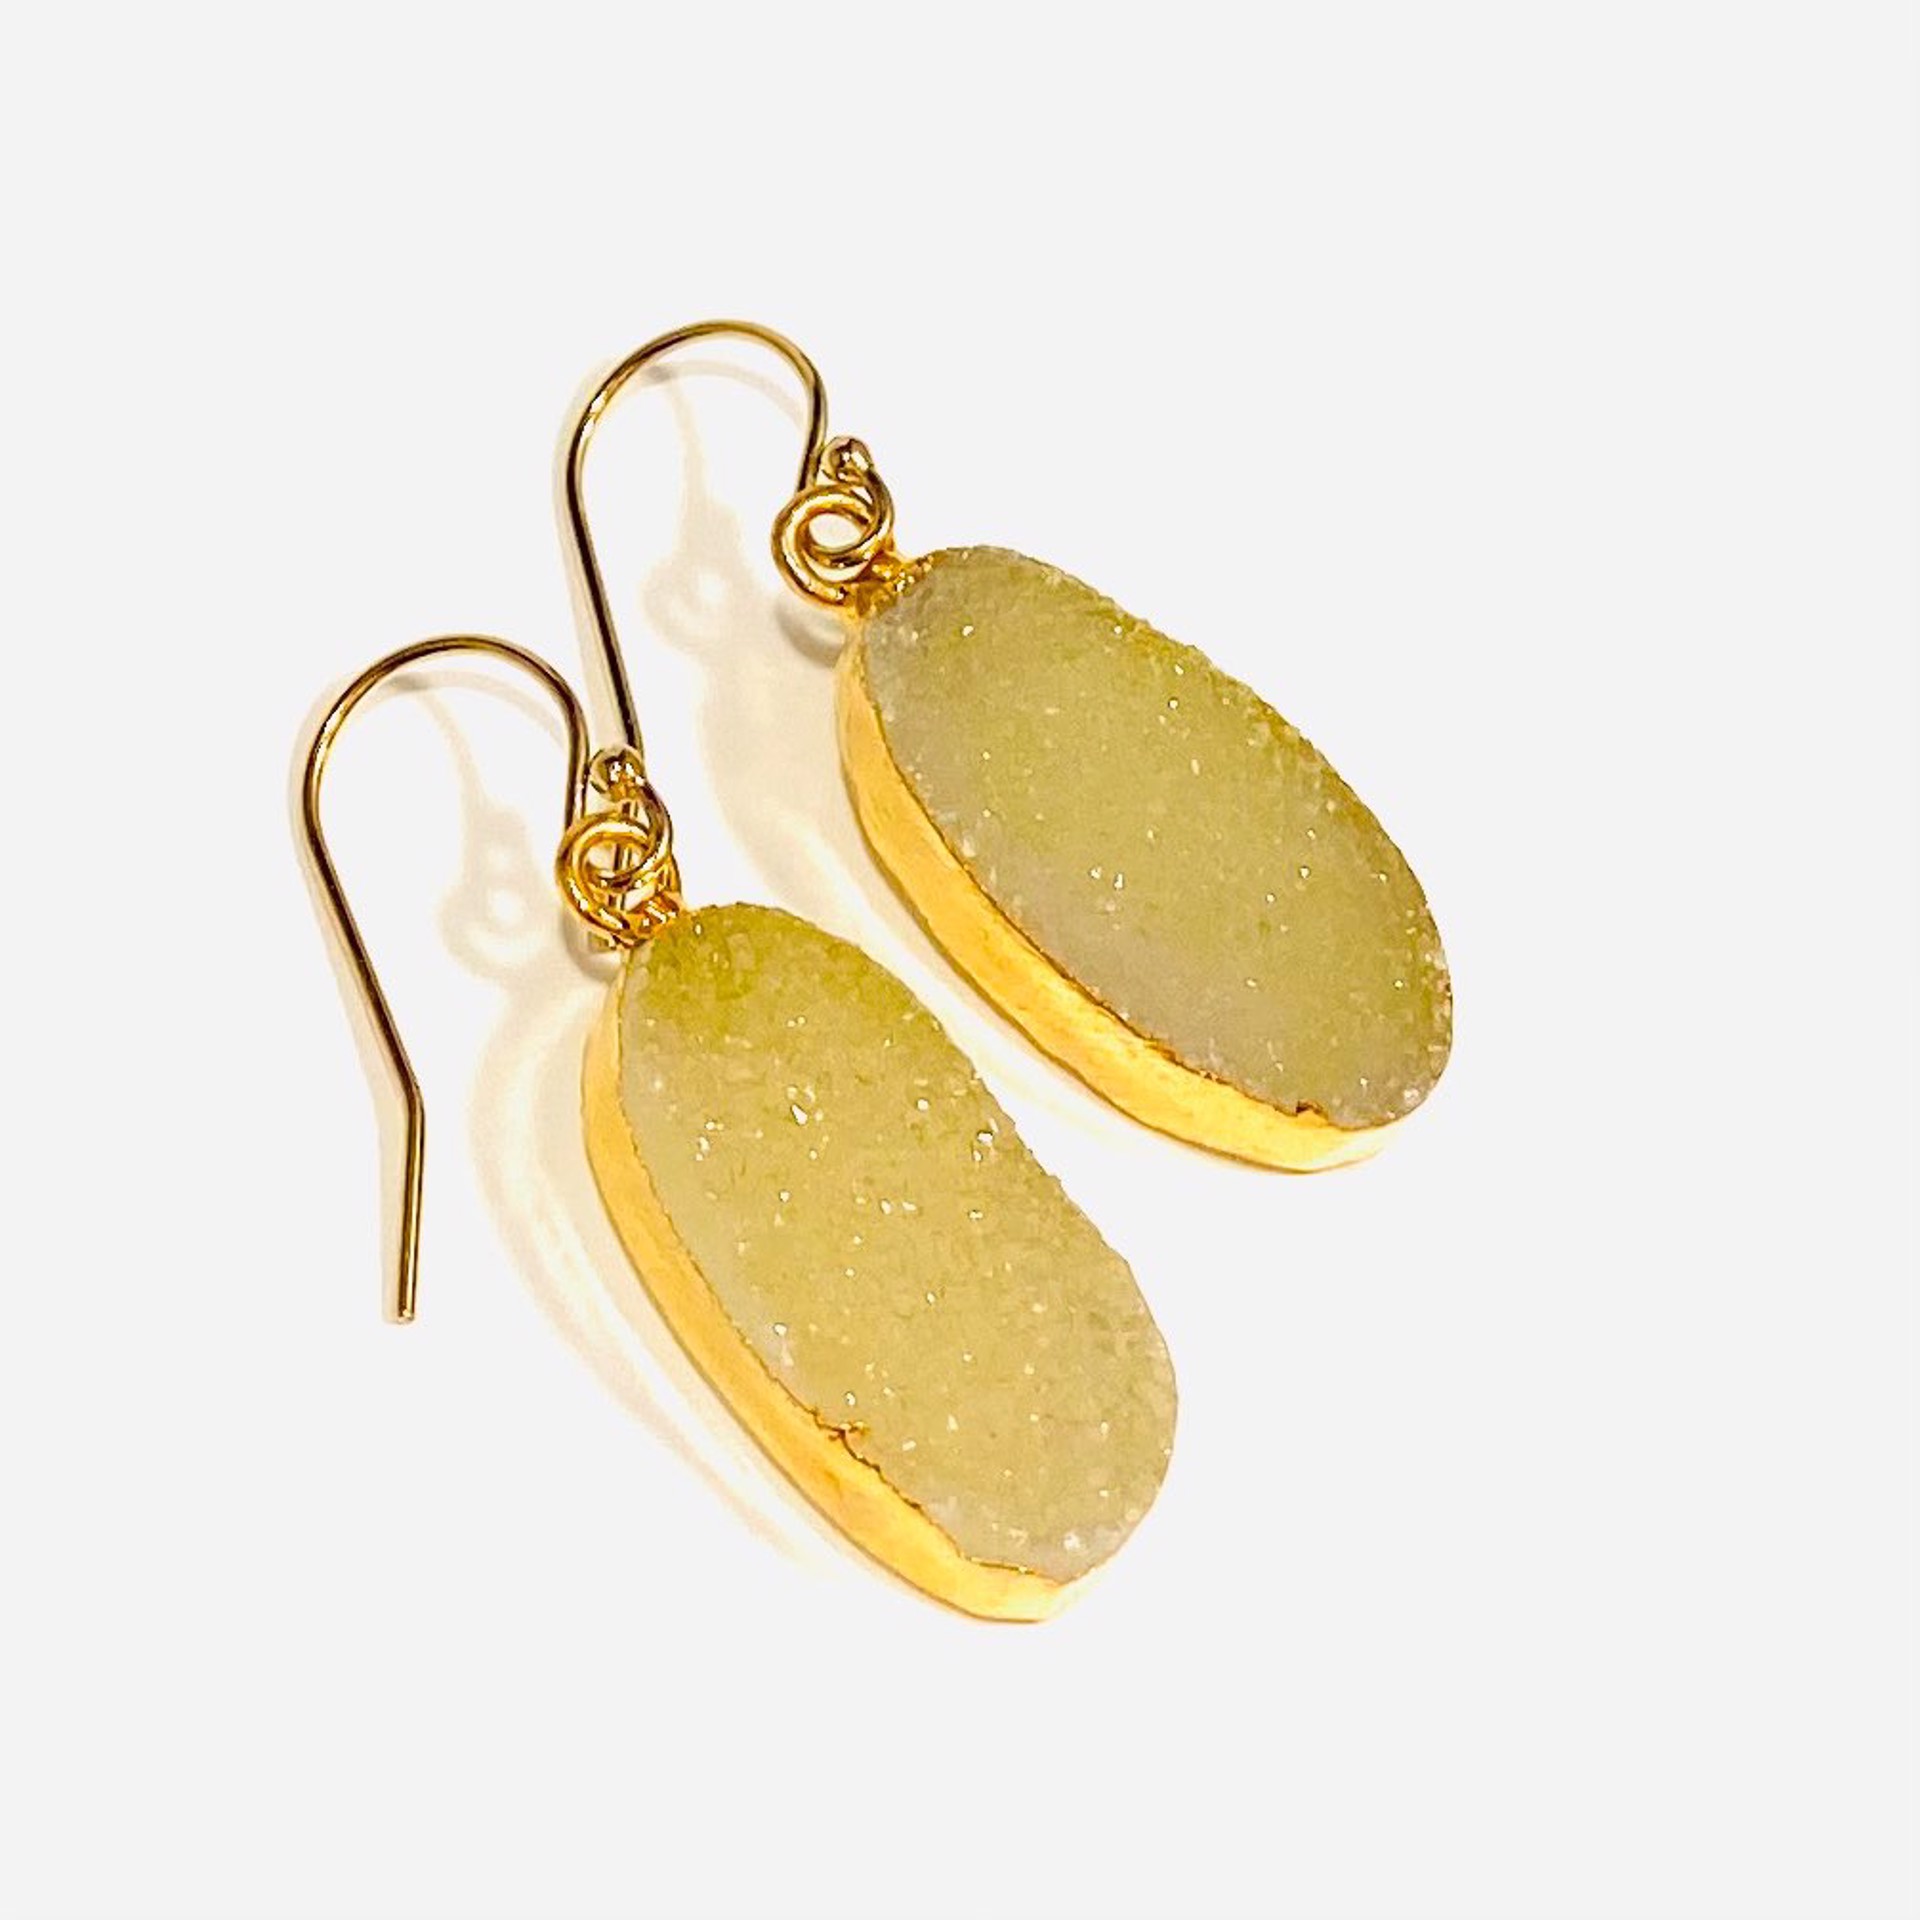 NT22-127 Oval Soft Yellow Druzy Earrings by Nance Trueworthy